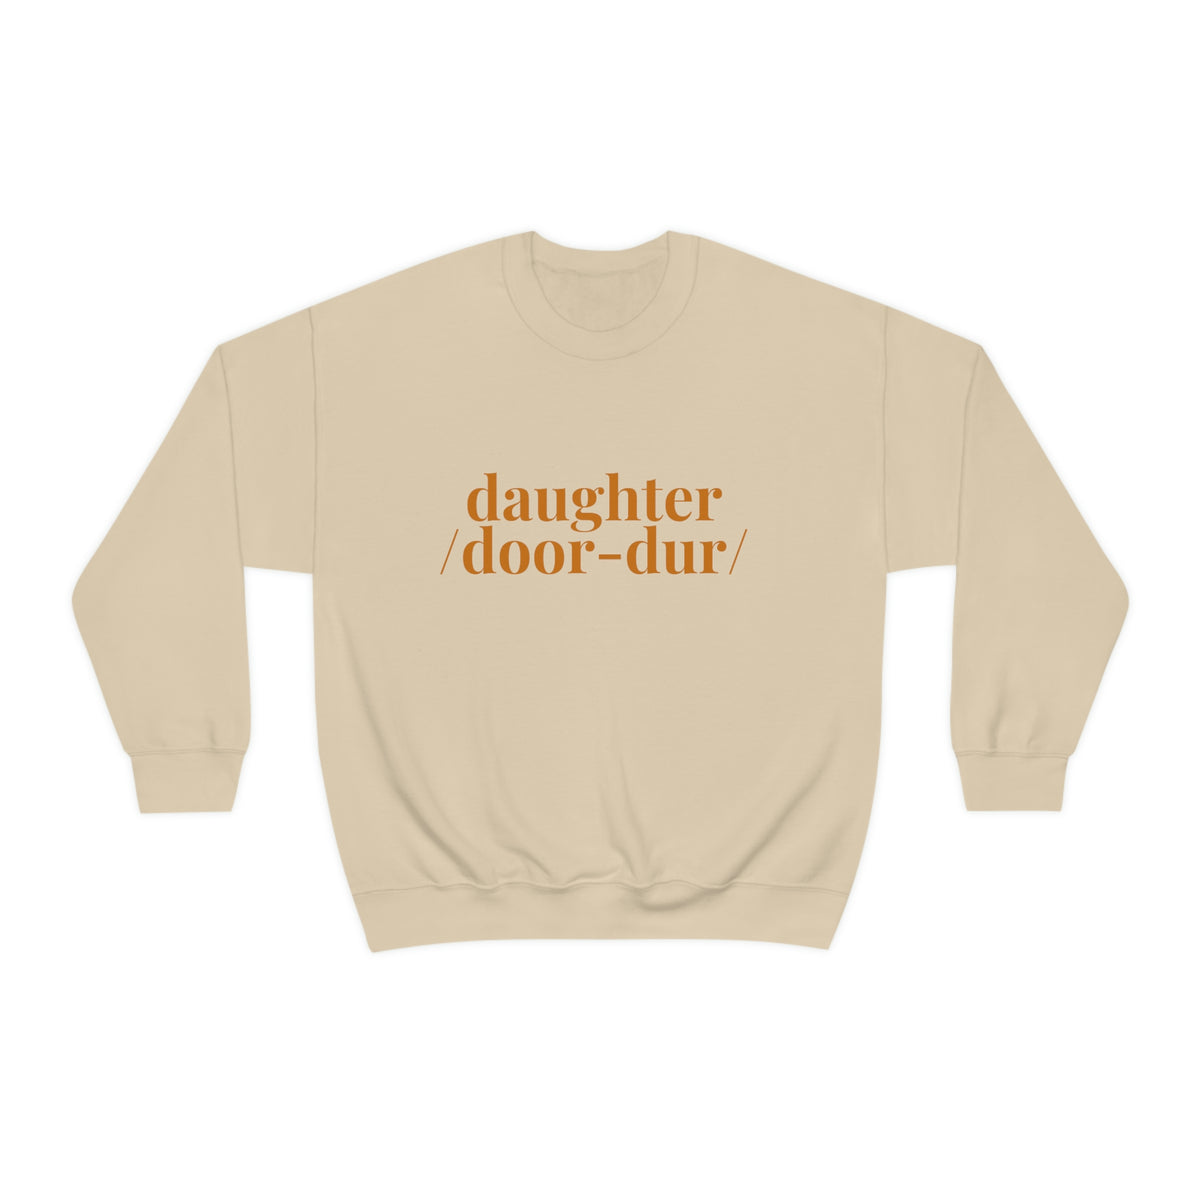 Delco Sweatshirt, Delaware County Top, Delco Slang Humor, Daughter Crewneck, Local Sweat Shirt, Durdur Pullover, Delco Accent Top